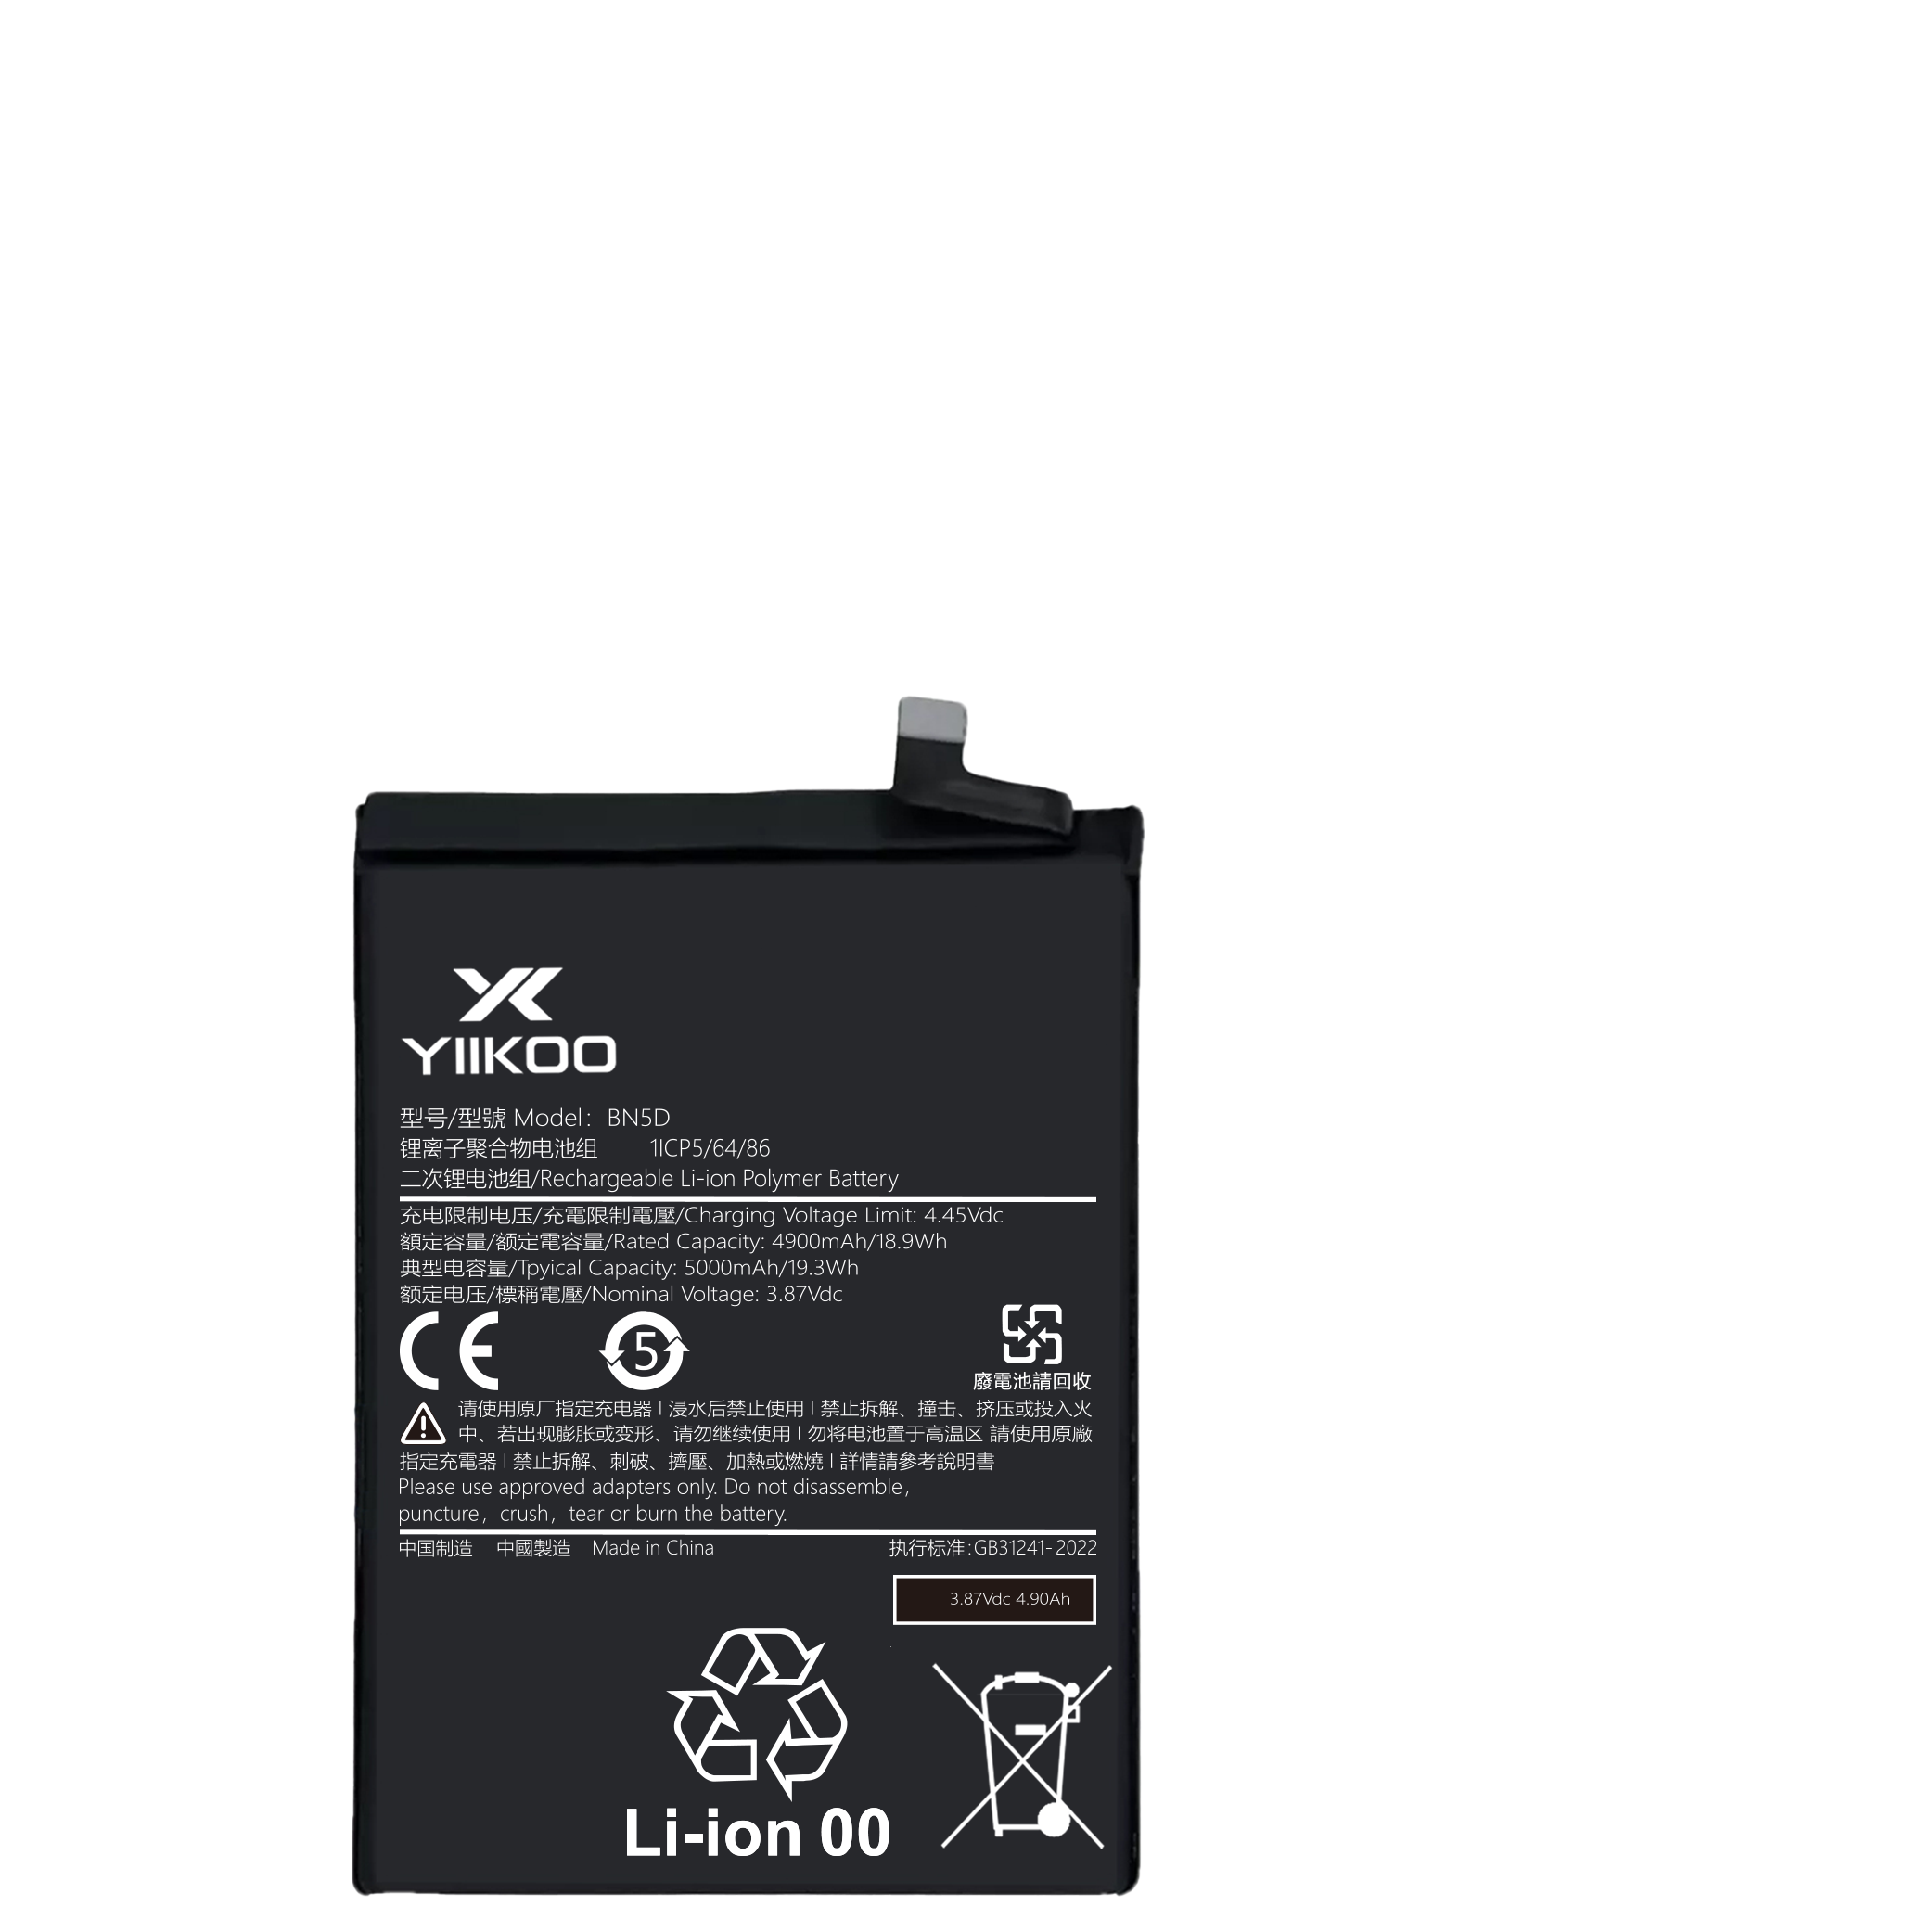 Hongmi note11TPro Battery (4900mAh) BN5D